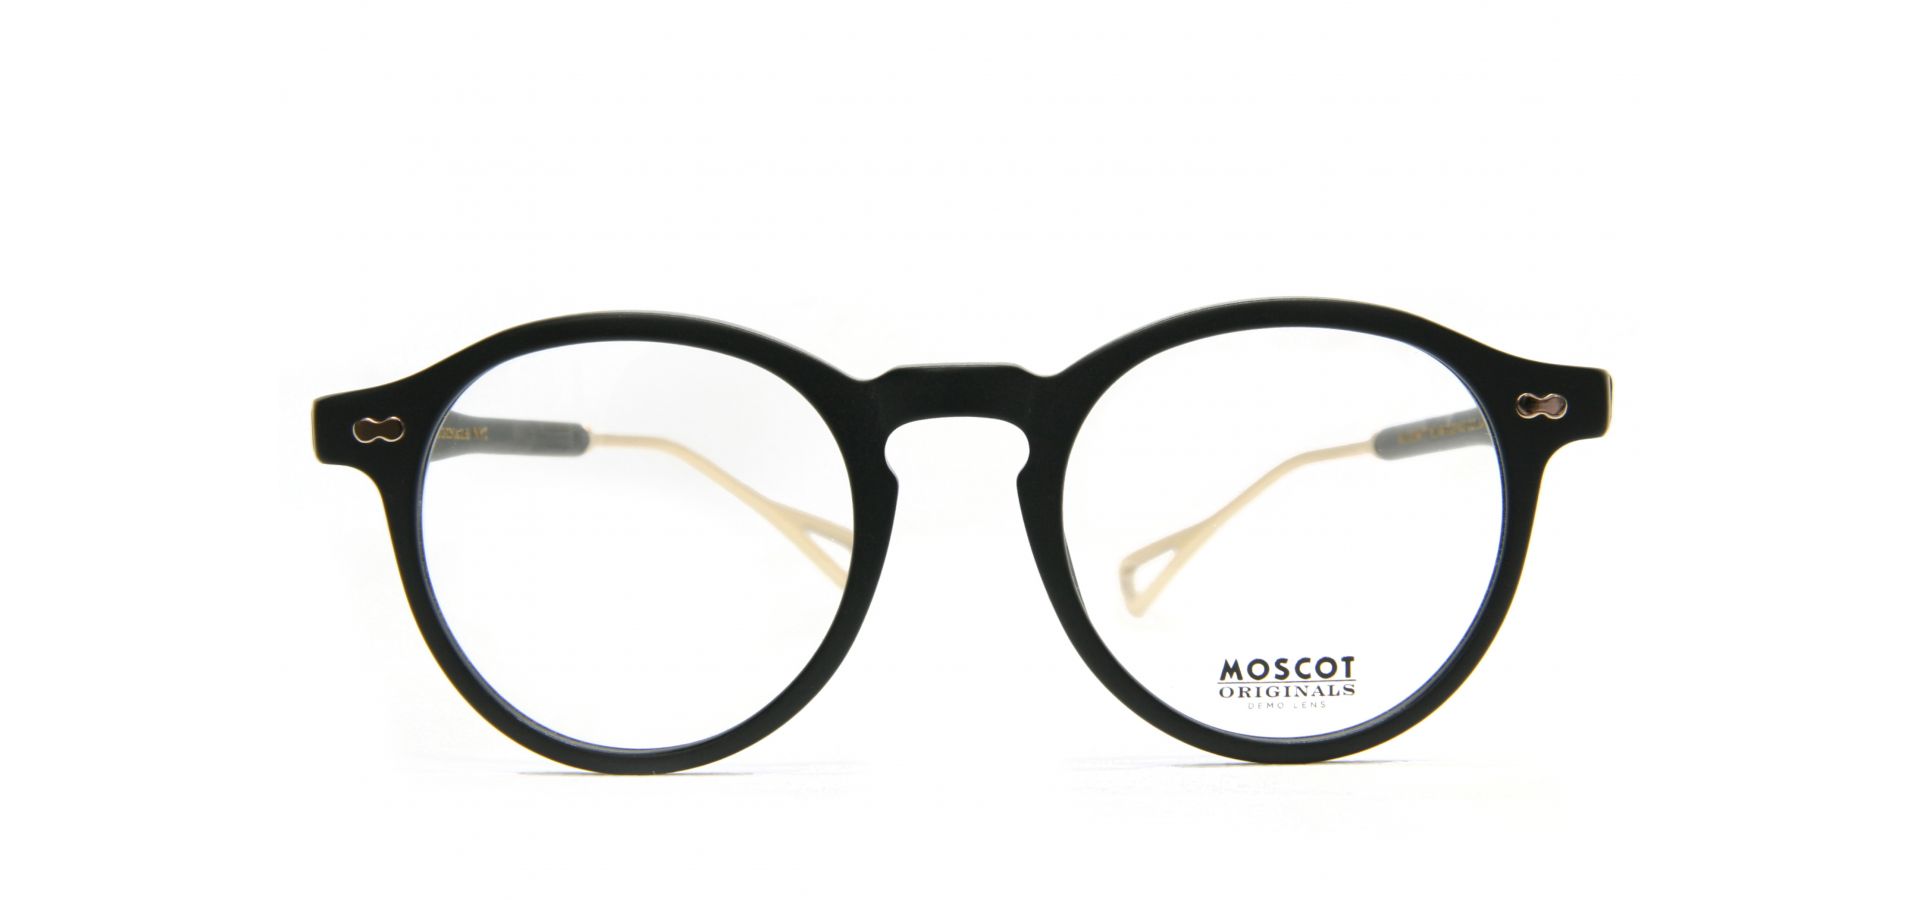 Korekcijska očala Moscot MILTZEN-TT 1329-01 4922: Spol: unisex, Material: acetat/kovinska